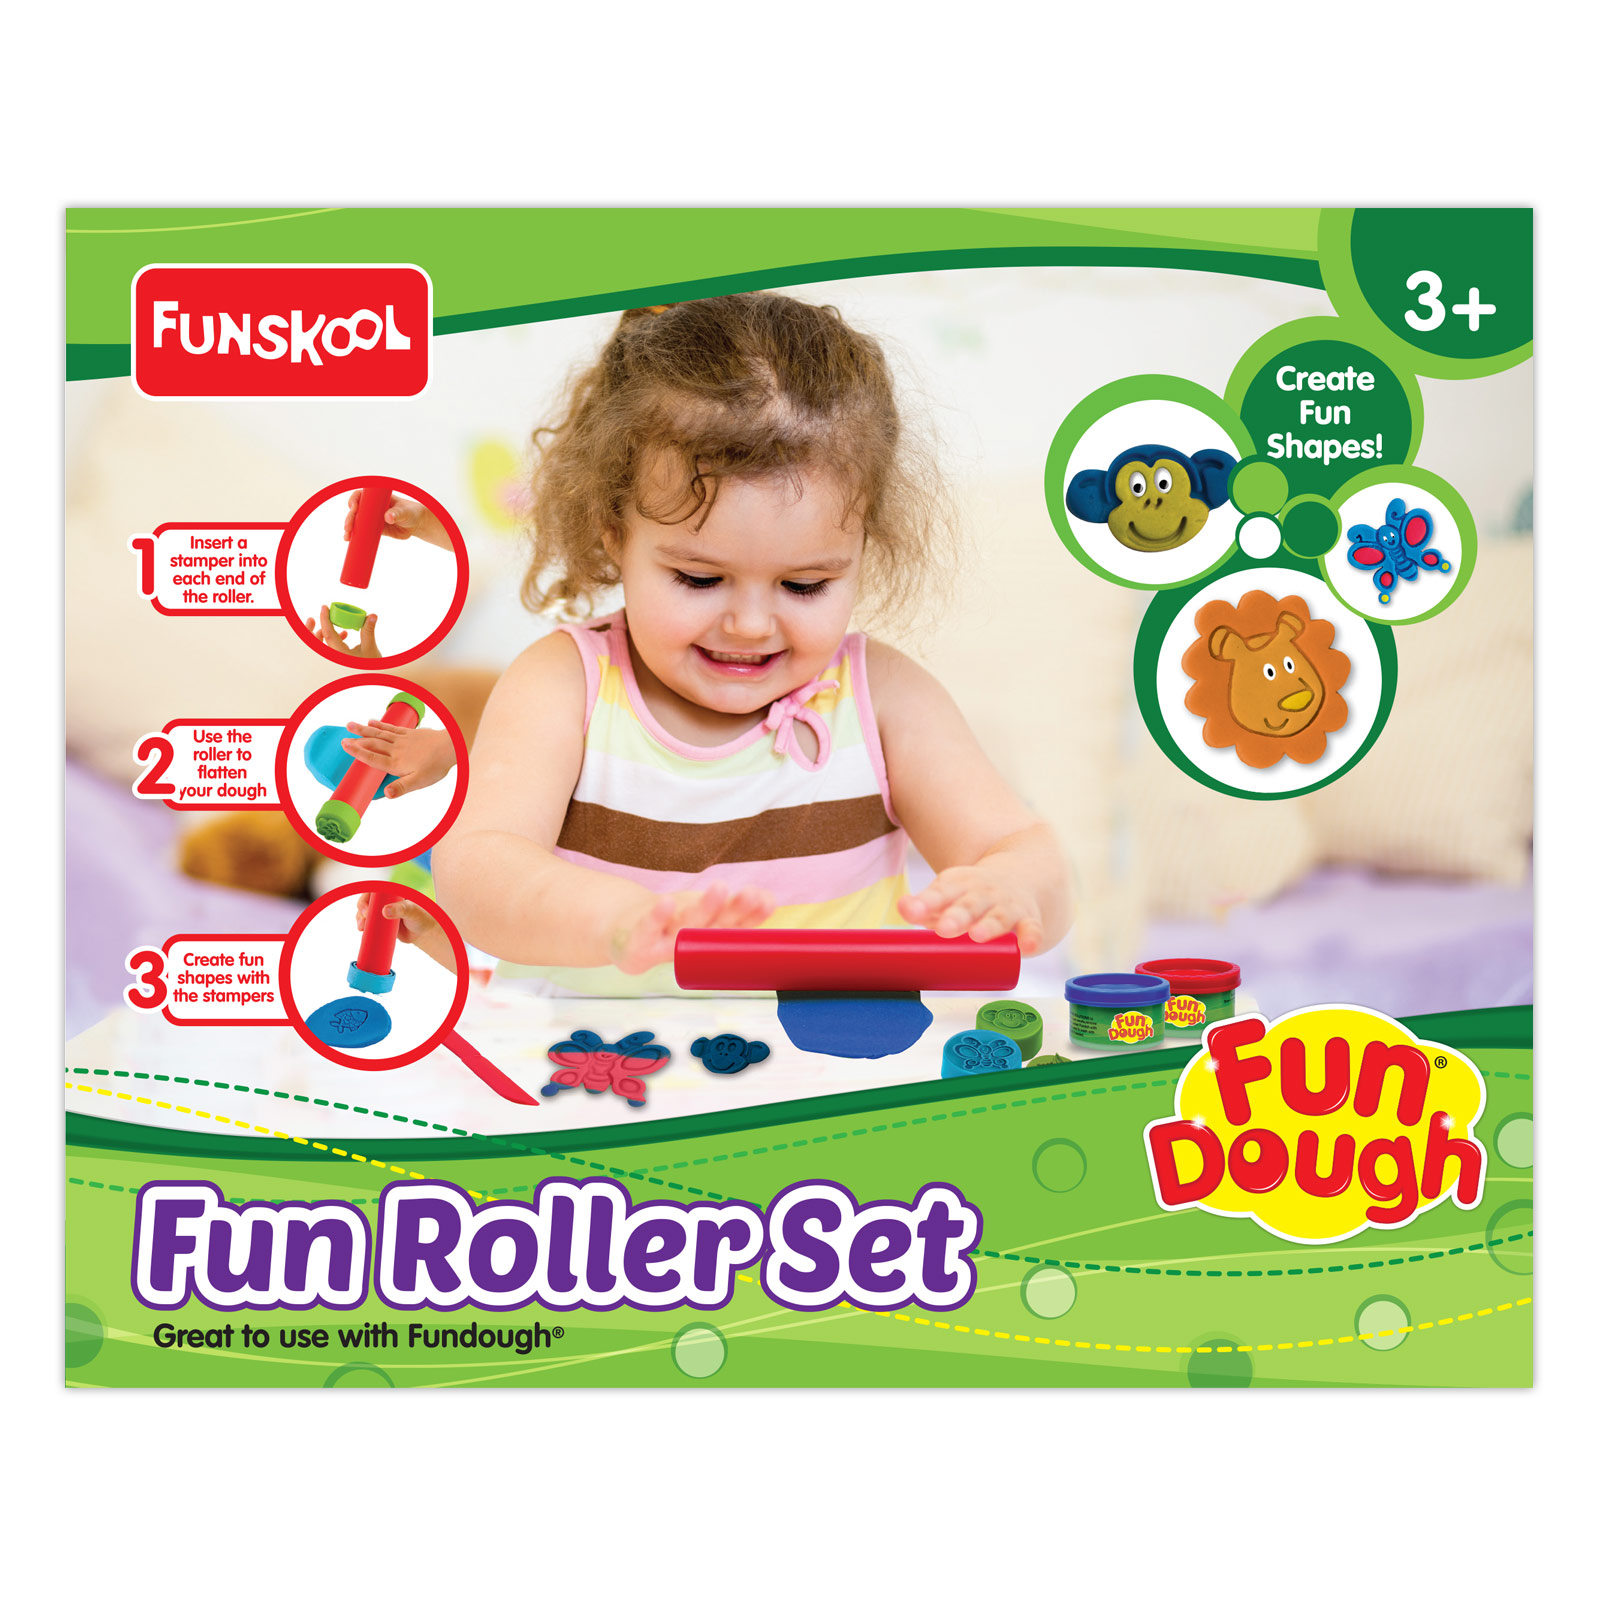 Fun Roller Set